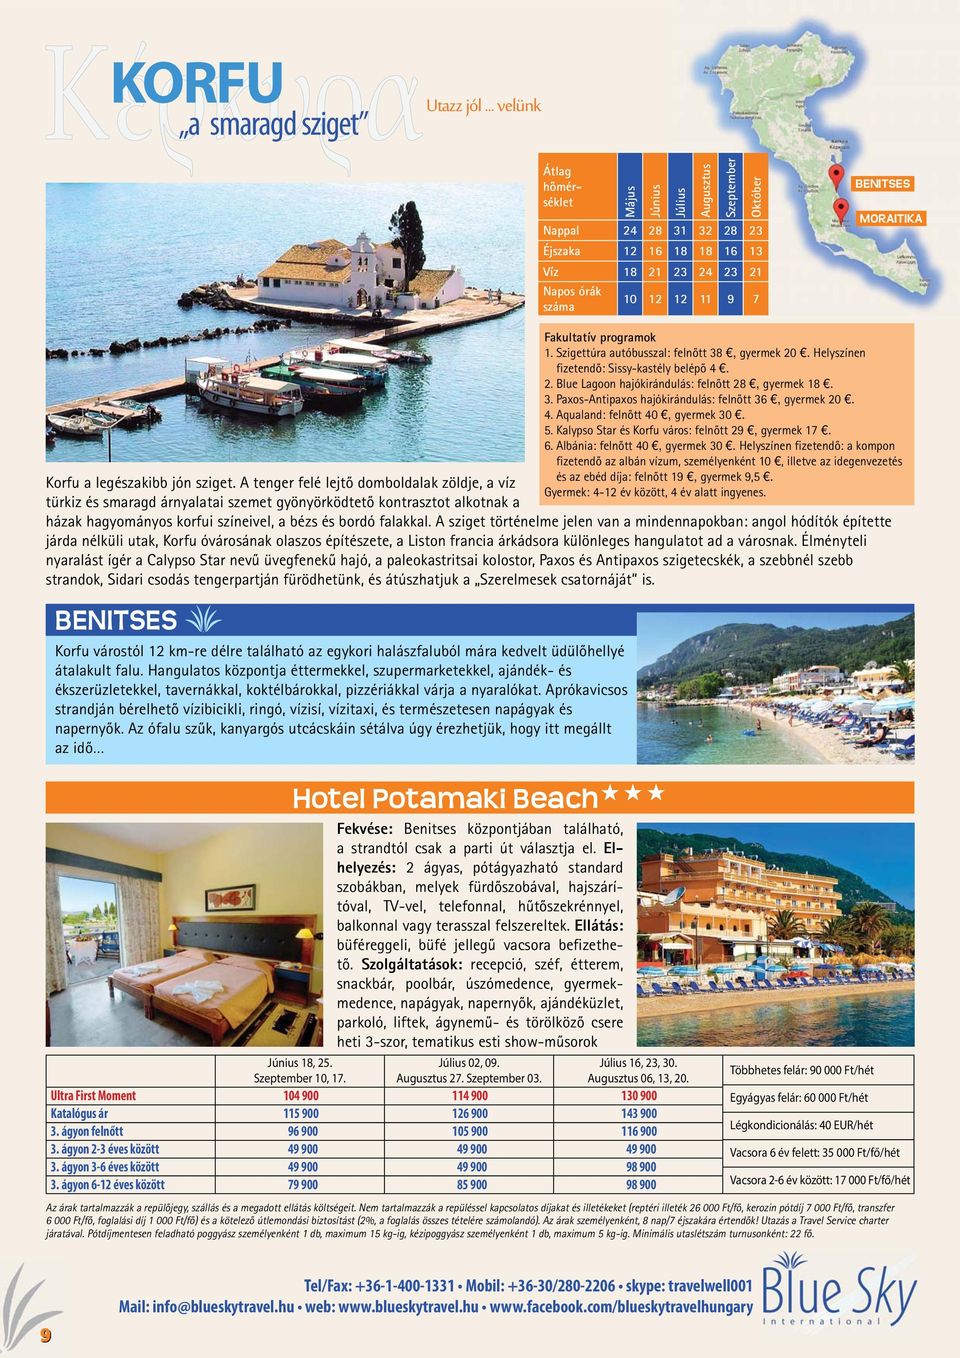 MORAITIKA Korfu a legészakibb jón sziget.